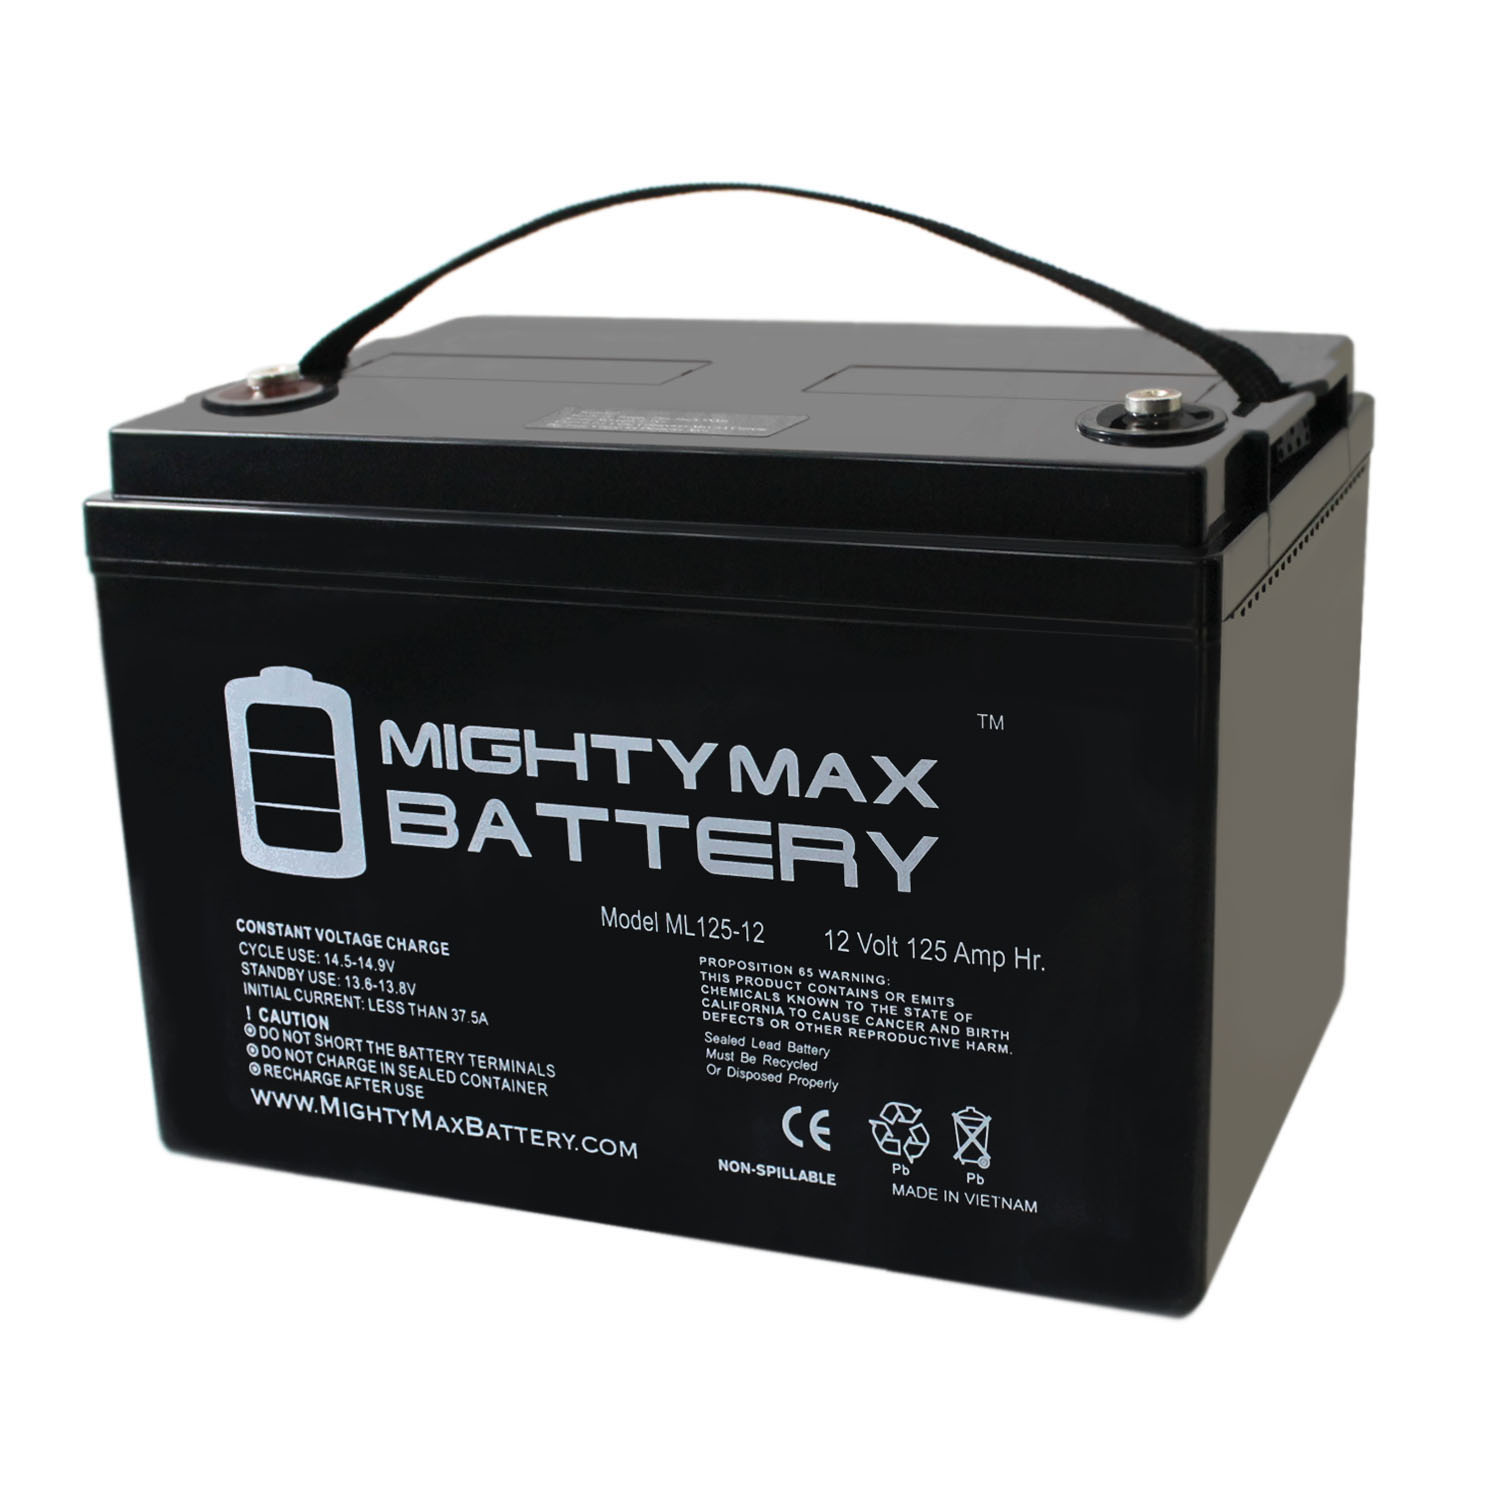 Max battery. 12v 125ah. Велосипедист аккумуляторы 12v. Battery brands. Www.POWERVOLT.